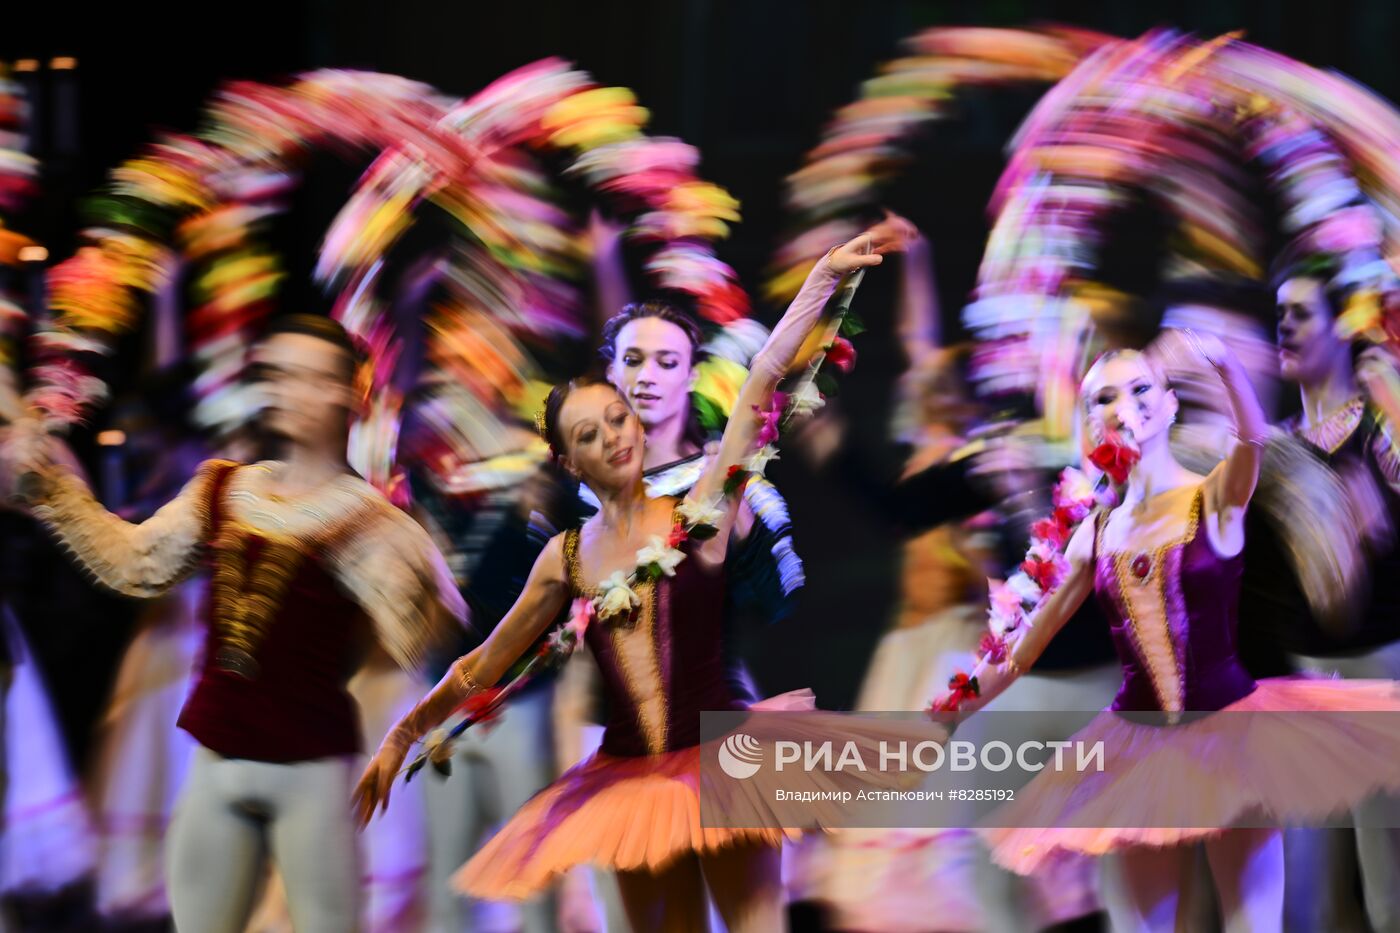 Гала-концерт ведущих солистов балетных театров России